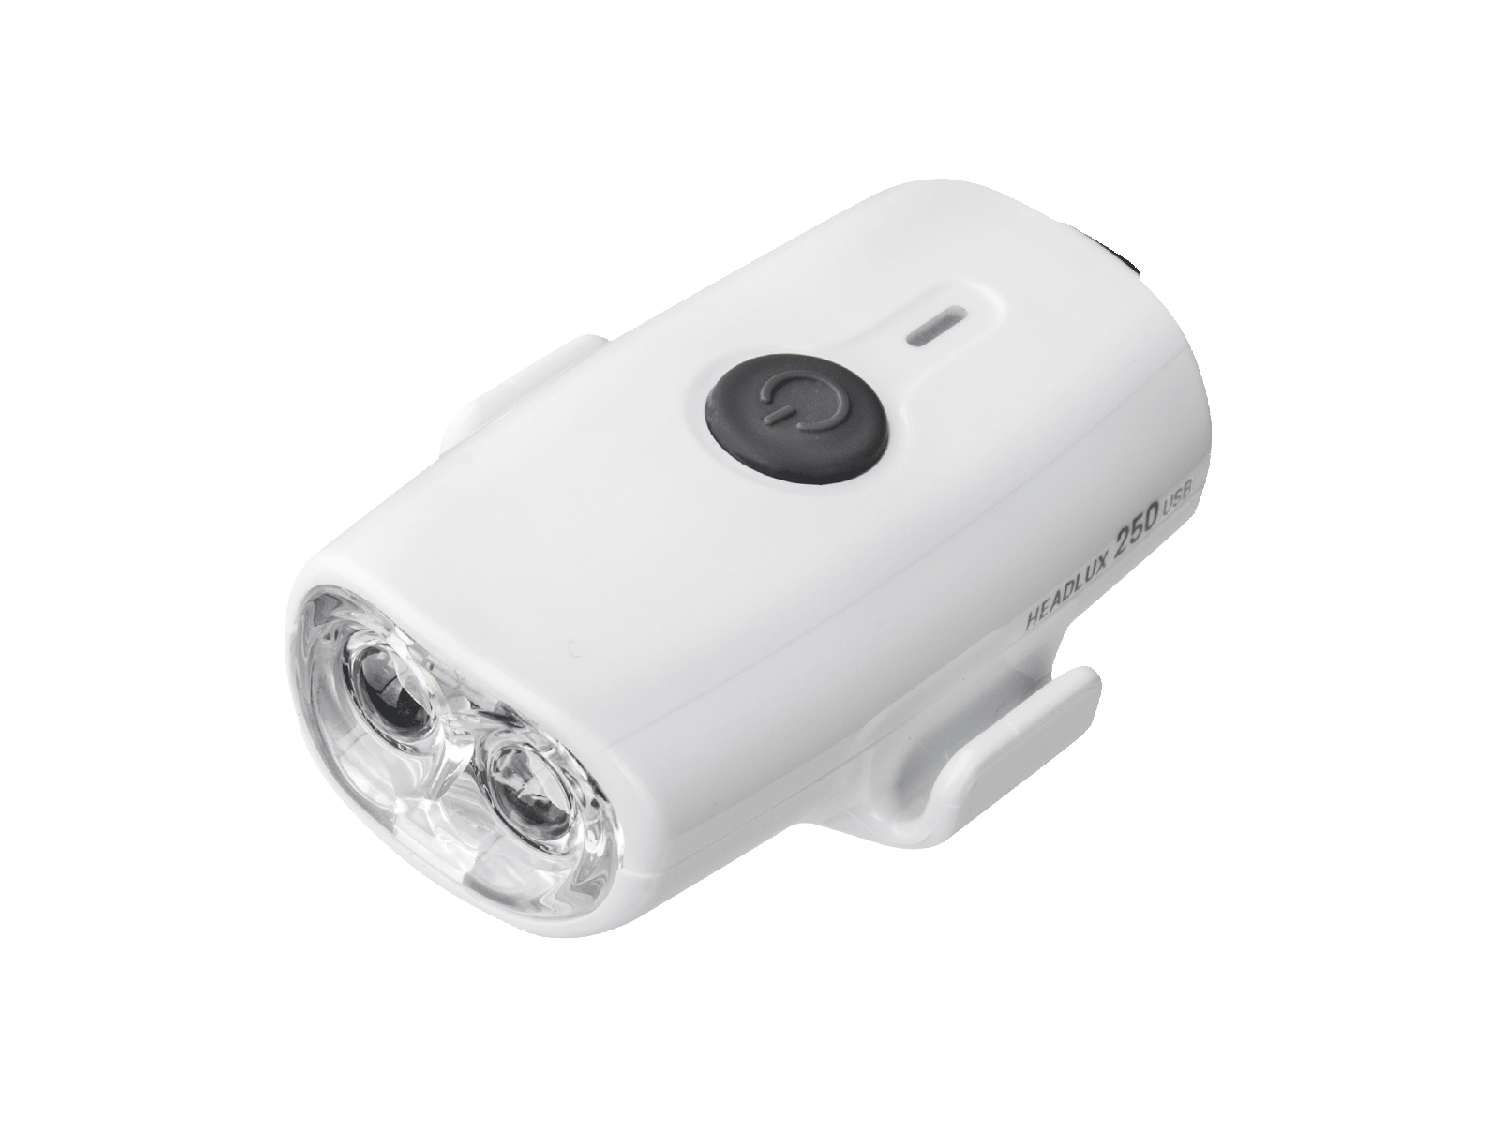 Фара велосипедная TOPEAK HEADLUX 250 USB, передняя, White, TMS088W фара велосипедная cat eye volt100xc hl el051rc передняя ce5342810